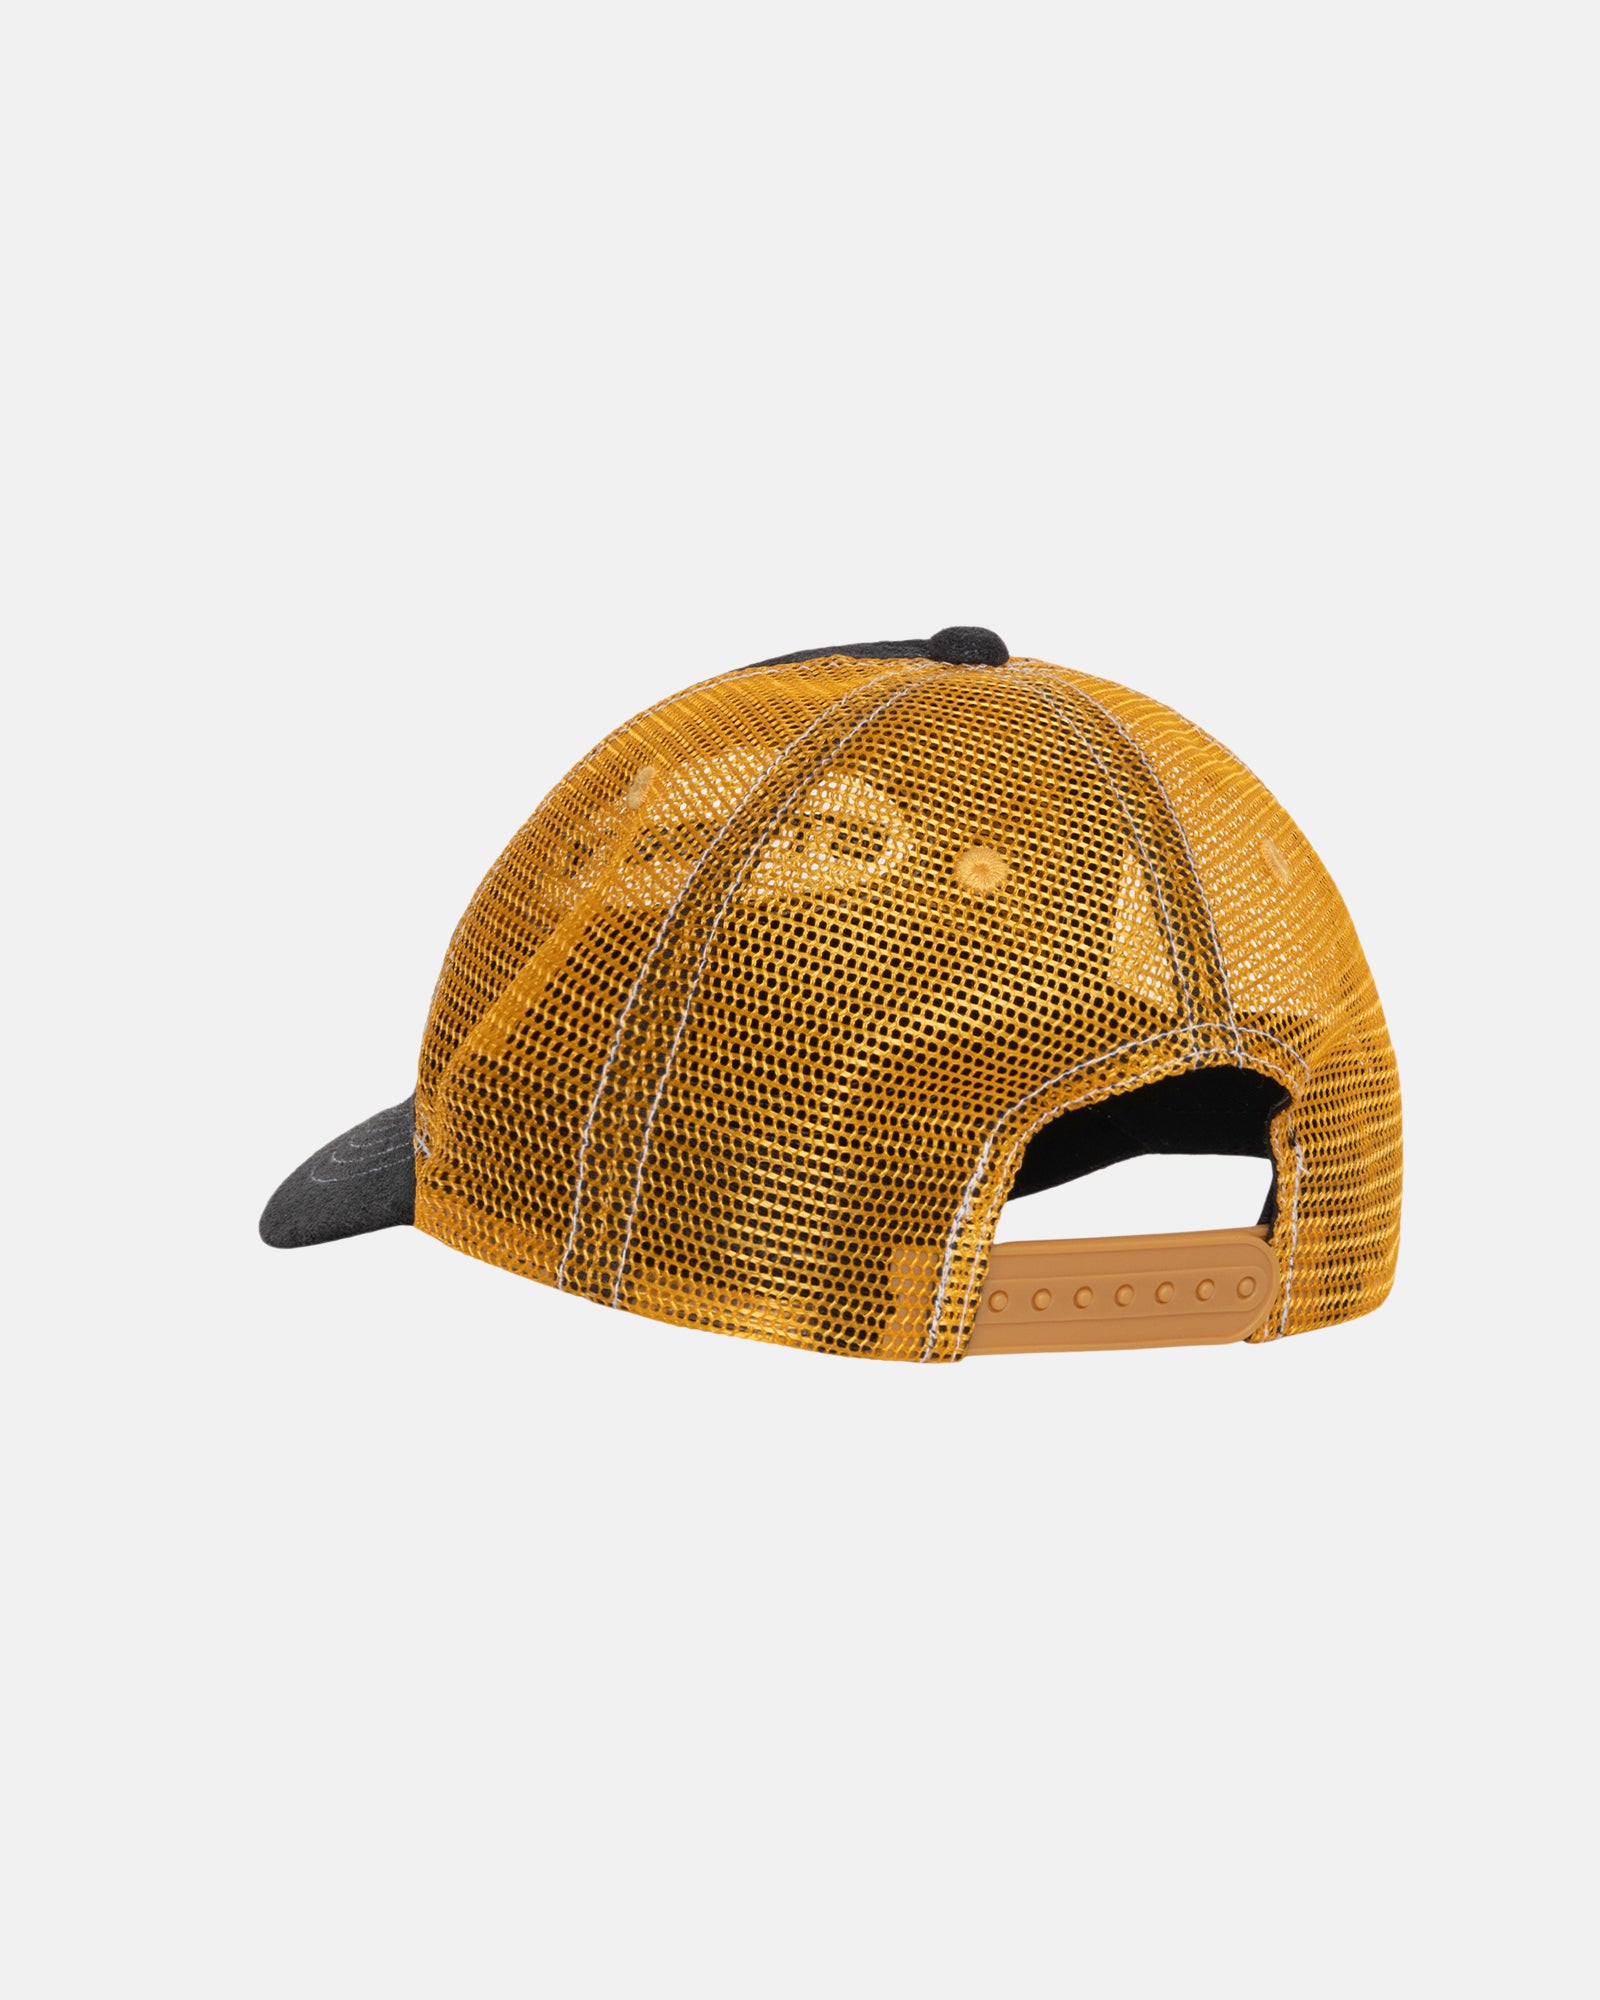 Stüssy Low Pro Trucker Cut-Out Leather Snapback Honey Headwear